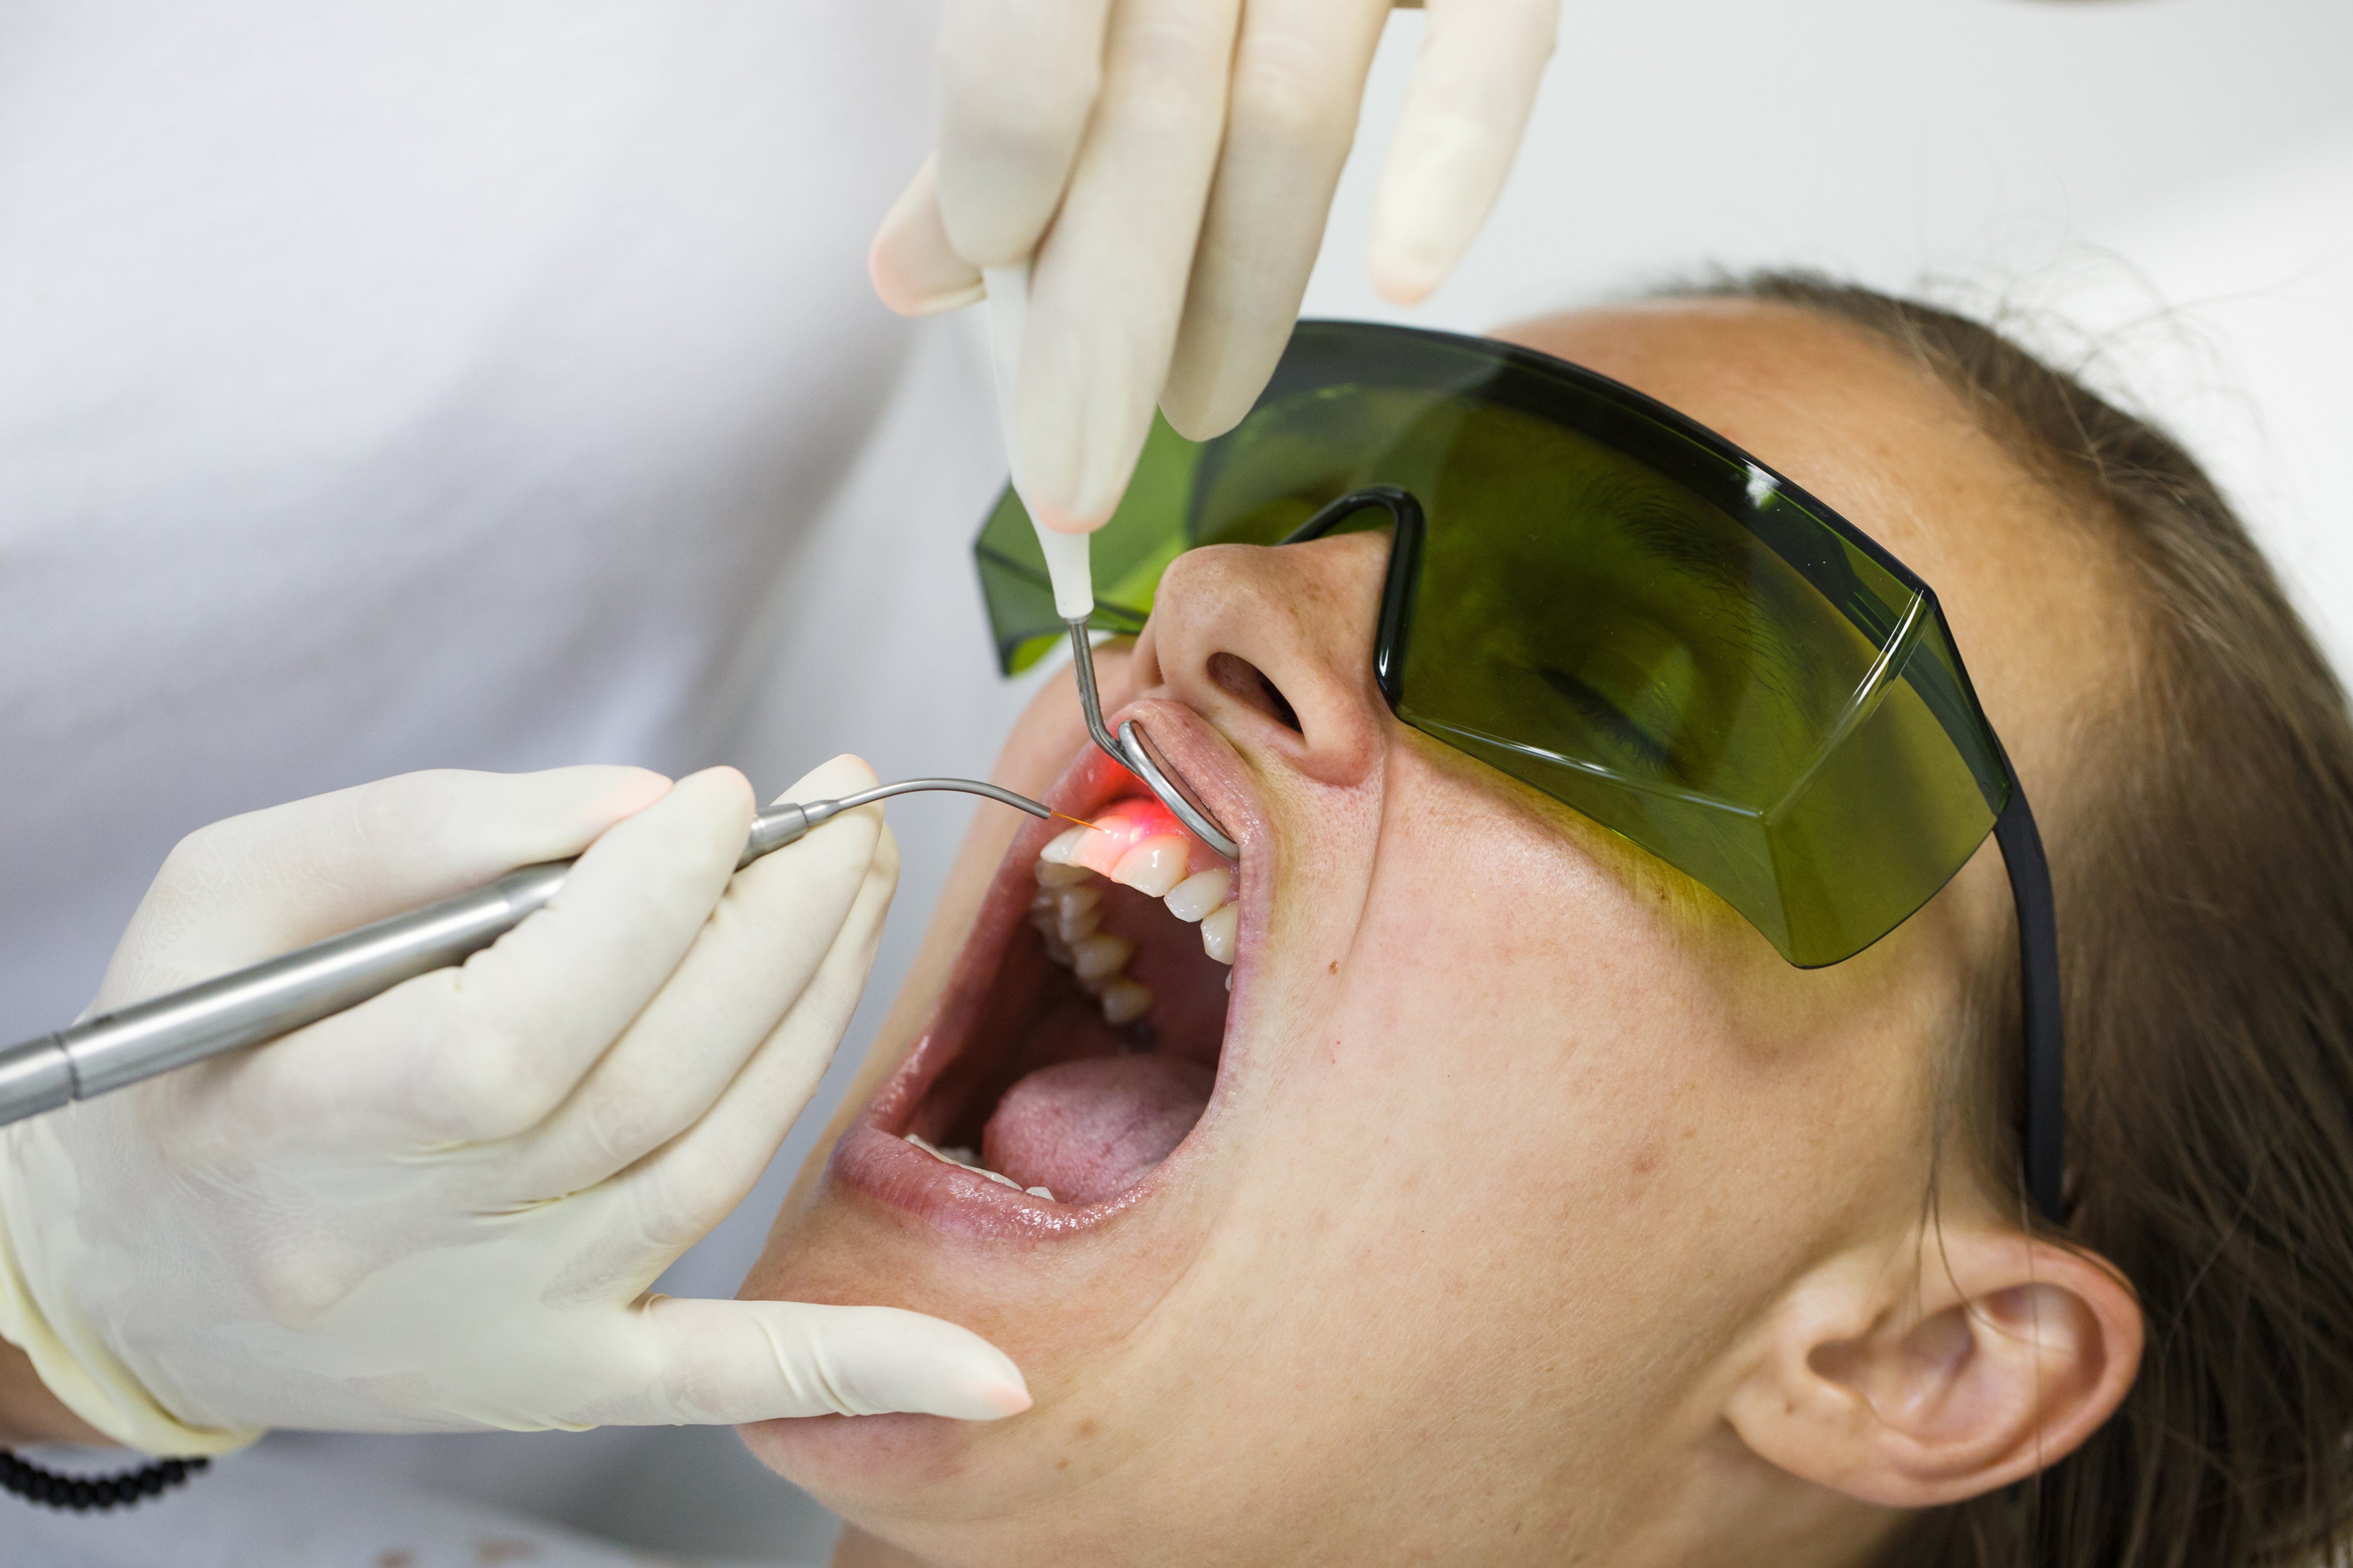 Is Laser Dentistry Safer Than Other Methods?